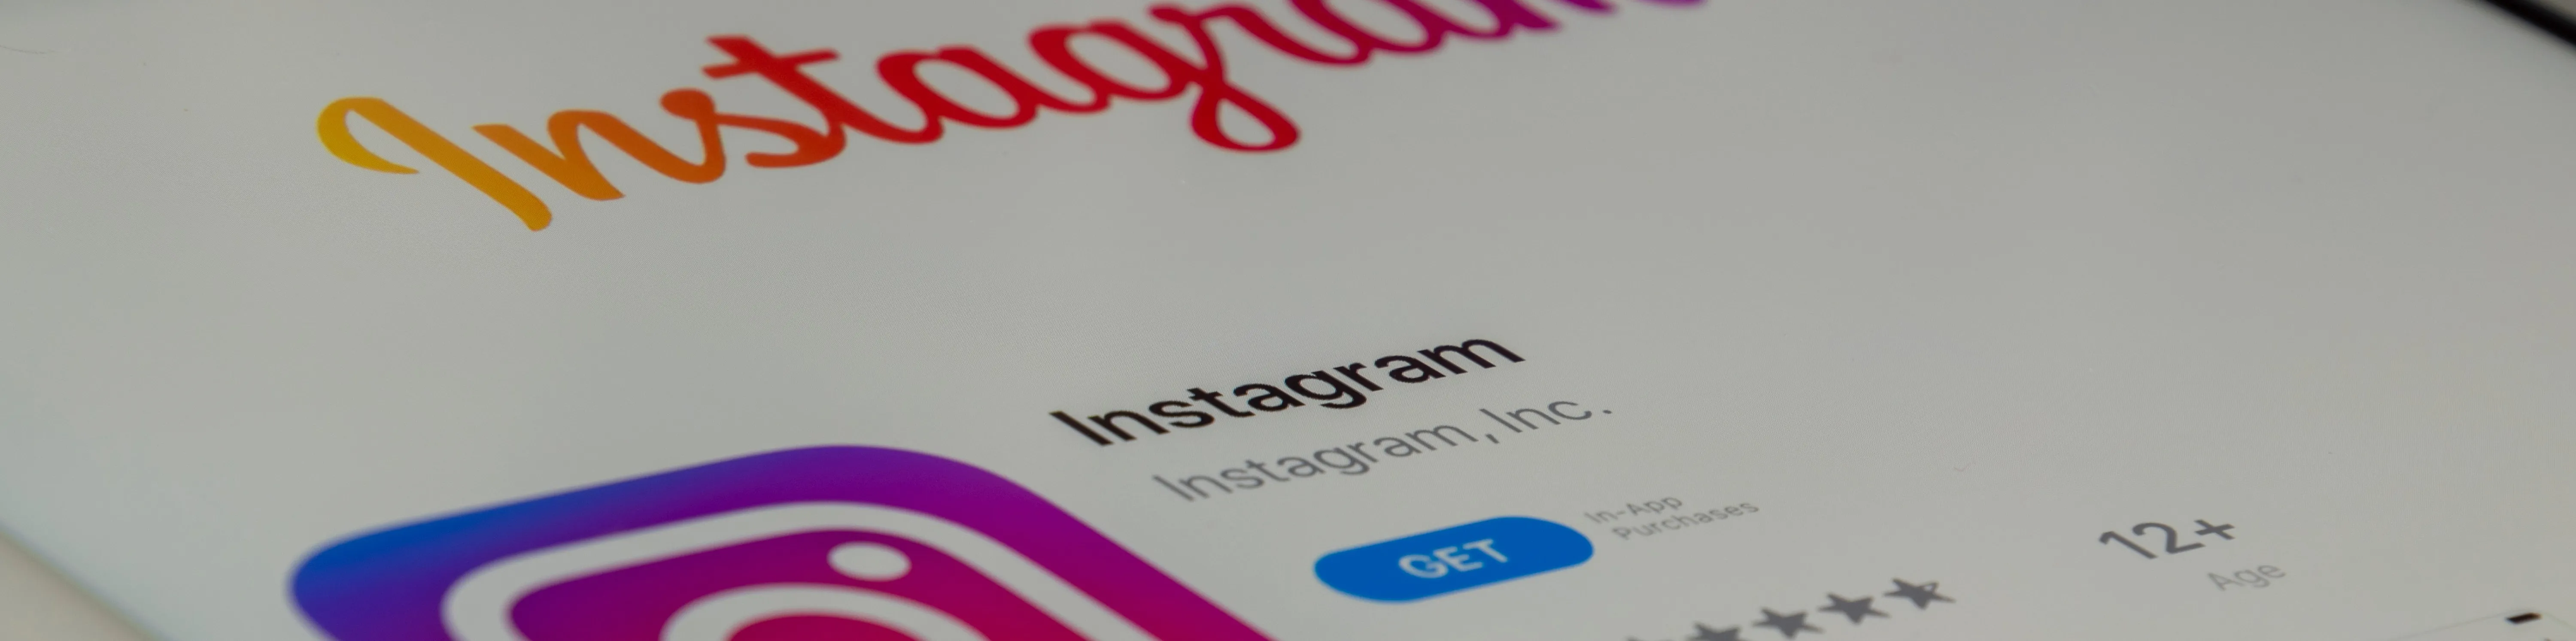 Conheça 7 aplicativos para otimizar seu trabalho no instagram